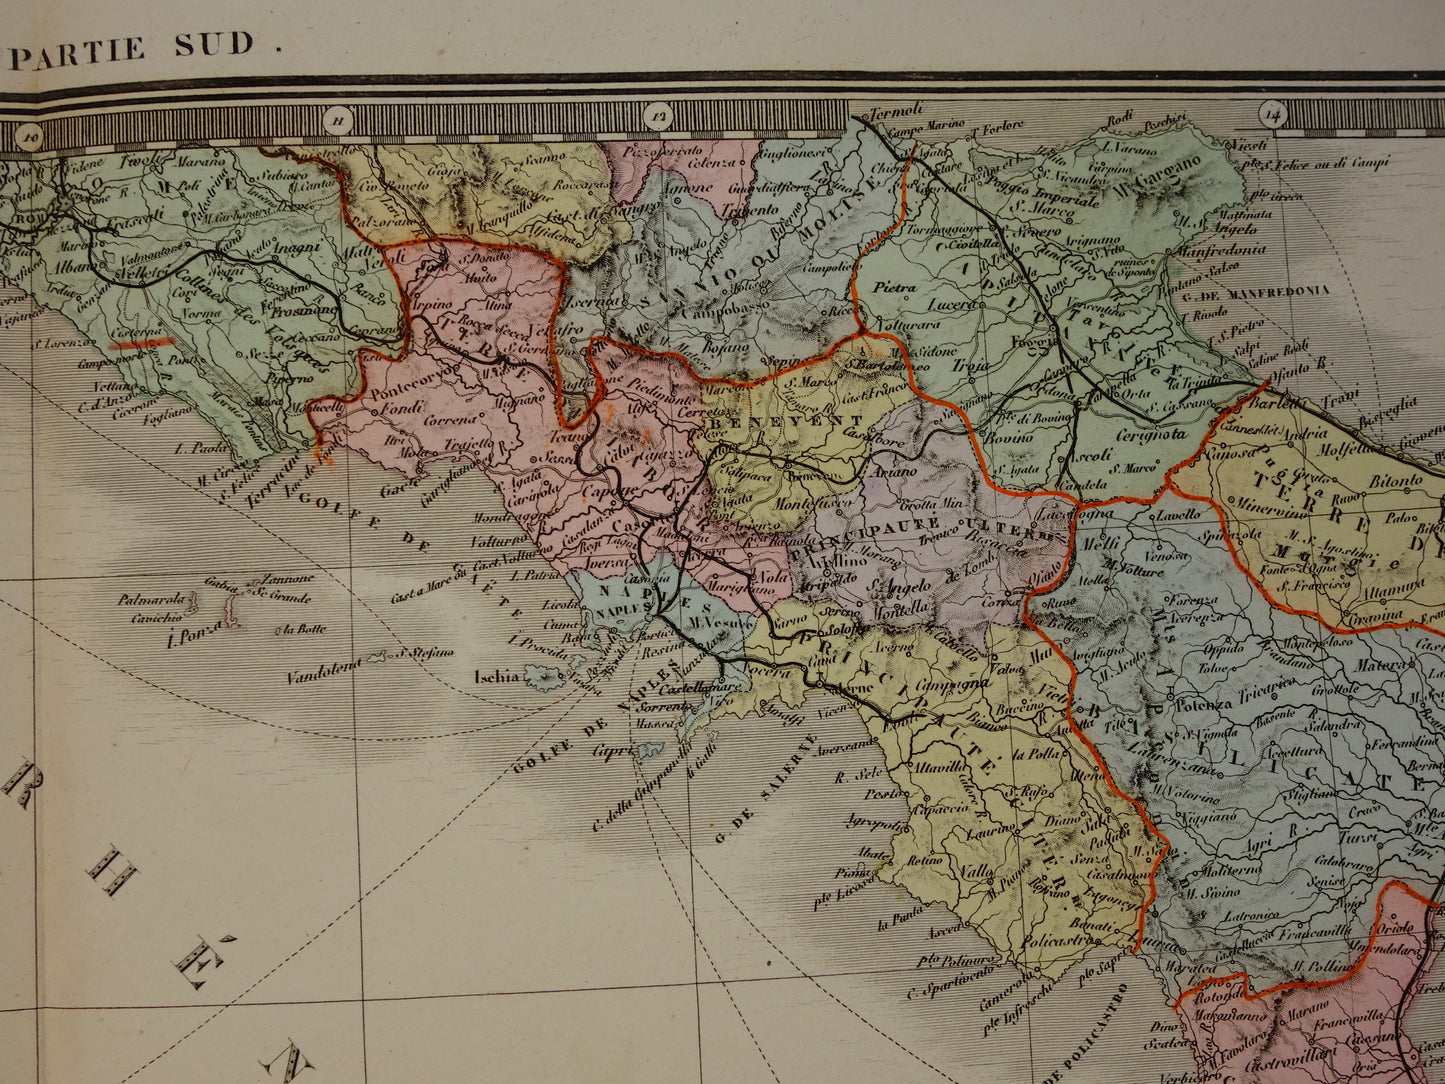 ITALIE antieke kaart van Italië uit 1875 originele zeer grote antieke handgekleurde landkaart poster van Italie